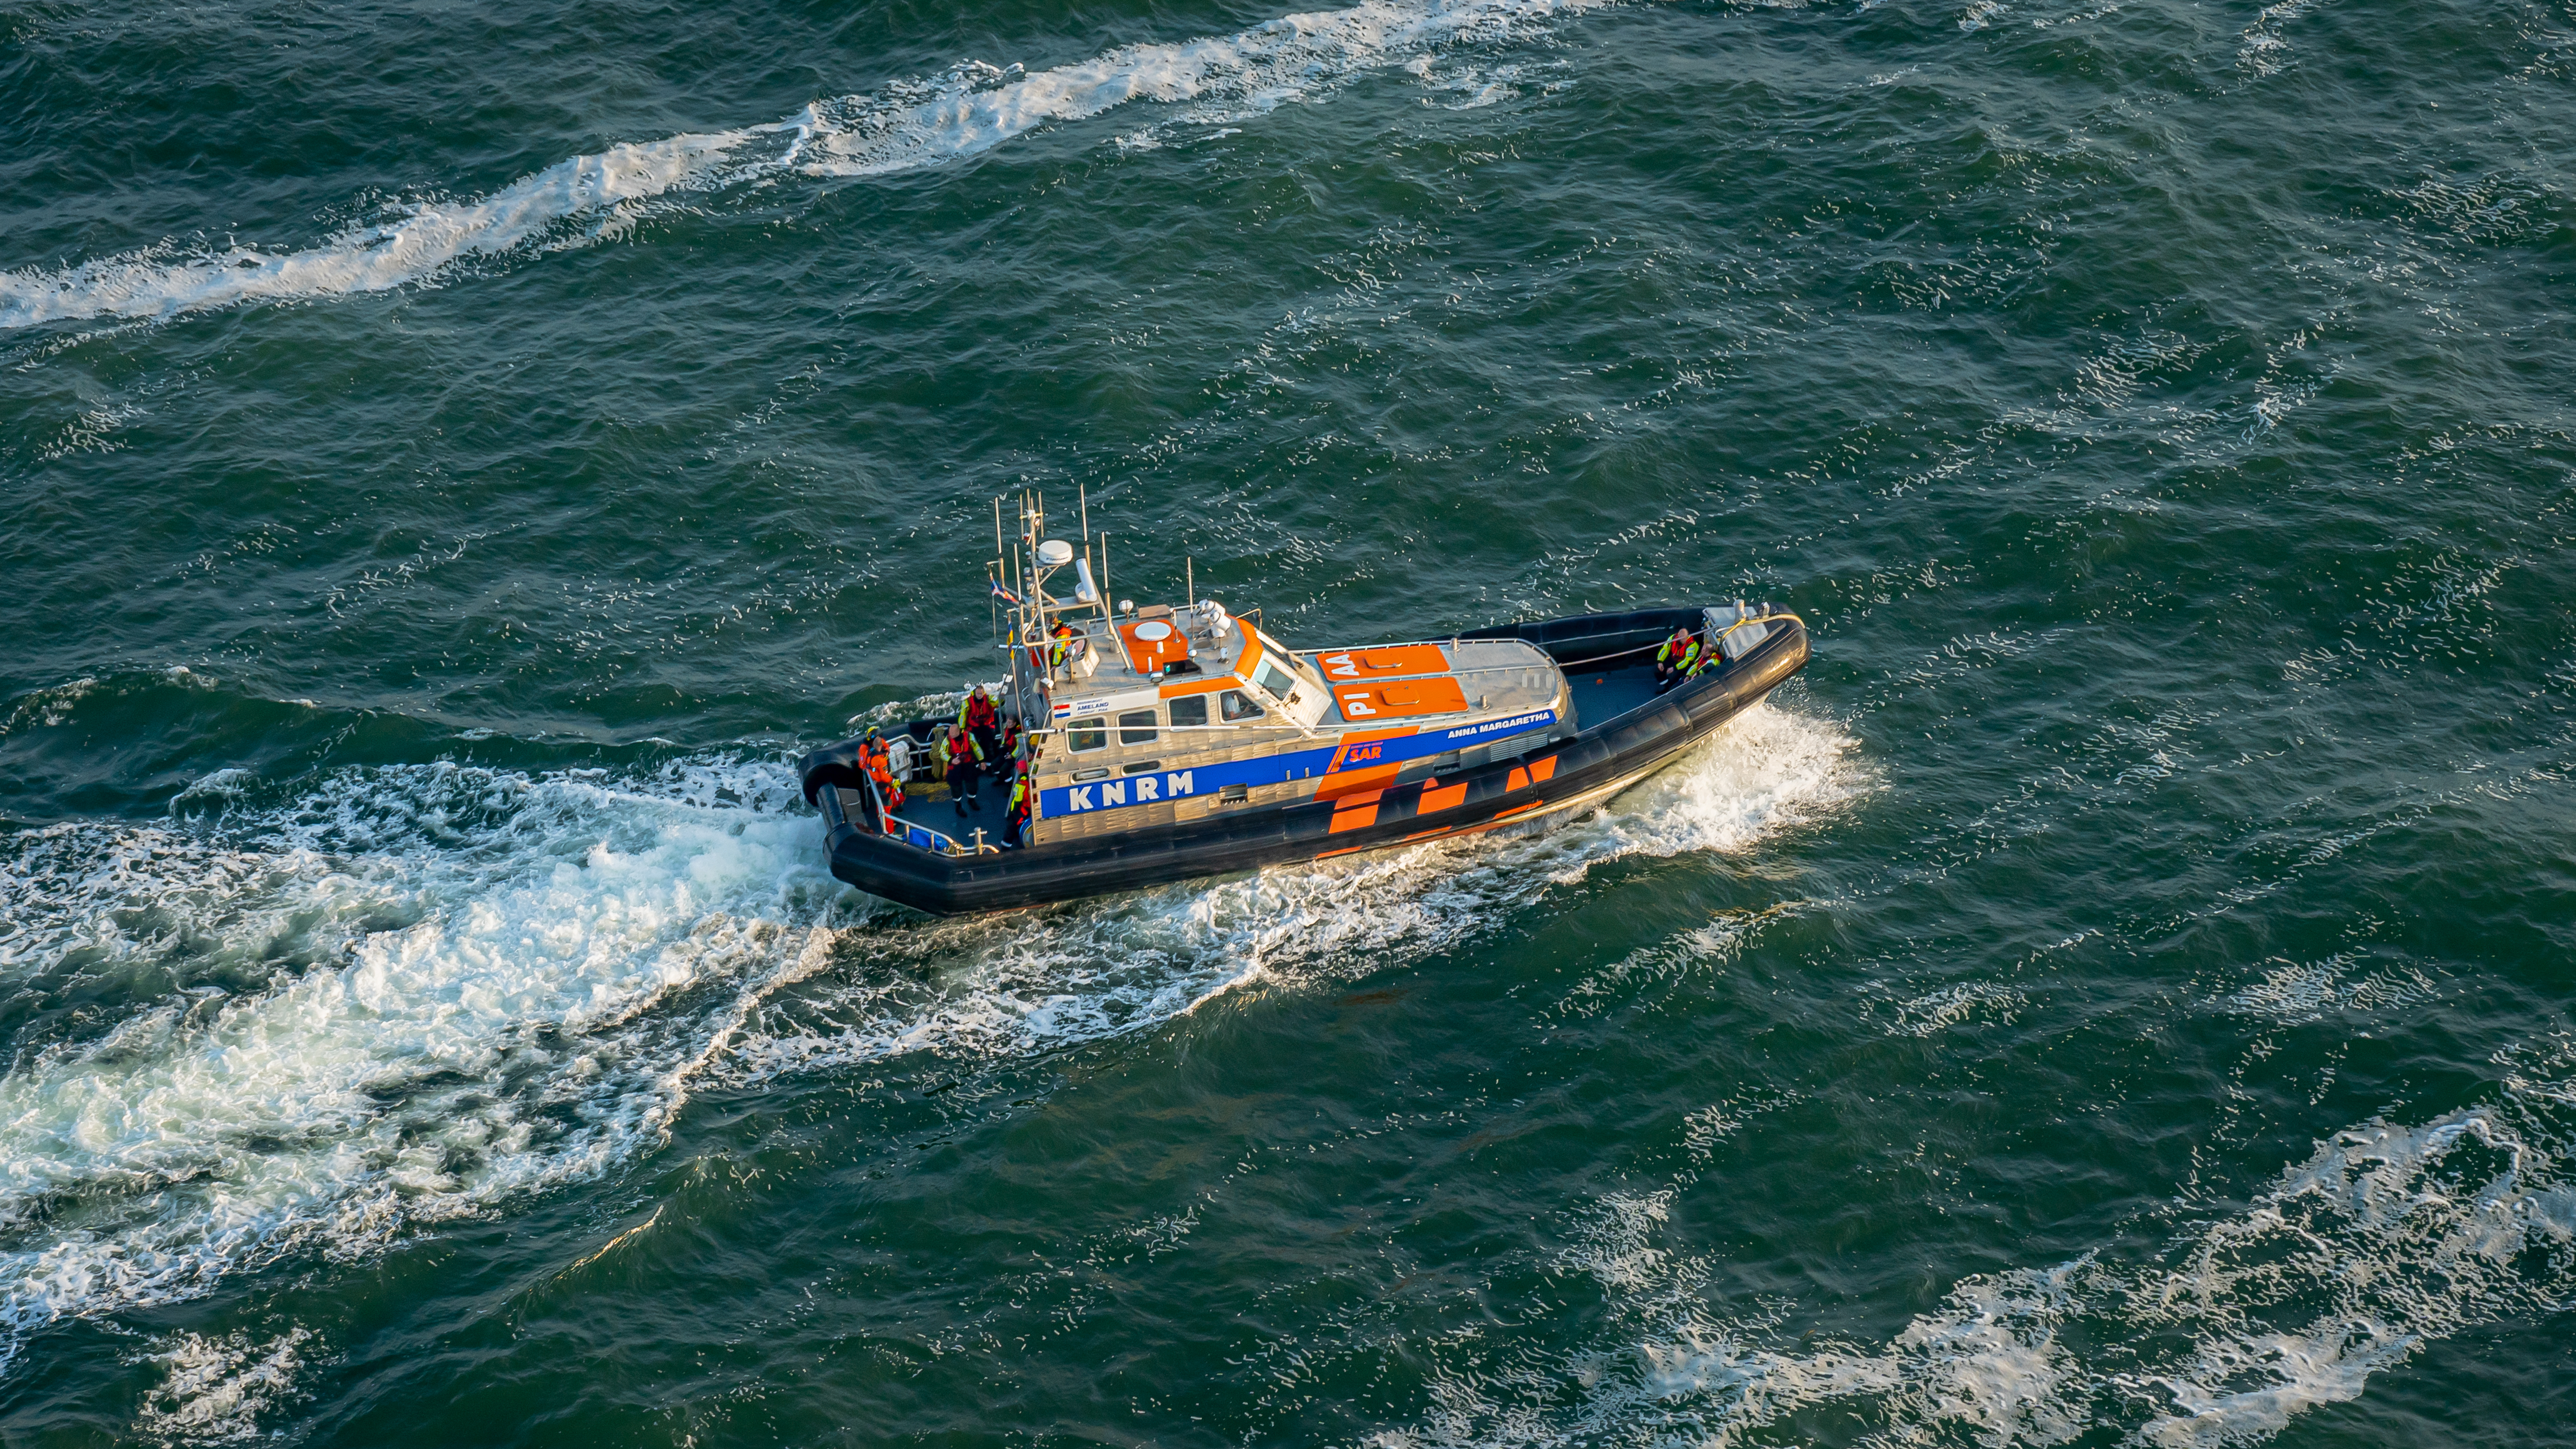 Blauw- witte reddingsboot  met neonoranje accenten van de Koninklijke Nederlandse Reddings Maatschappij  vaart op volle zee